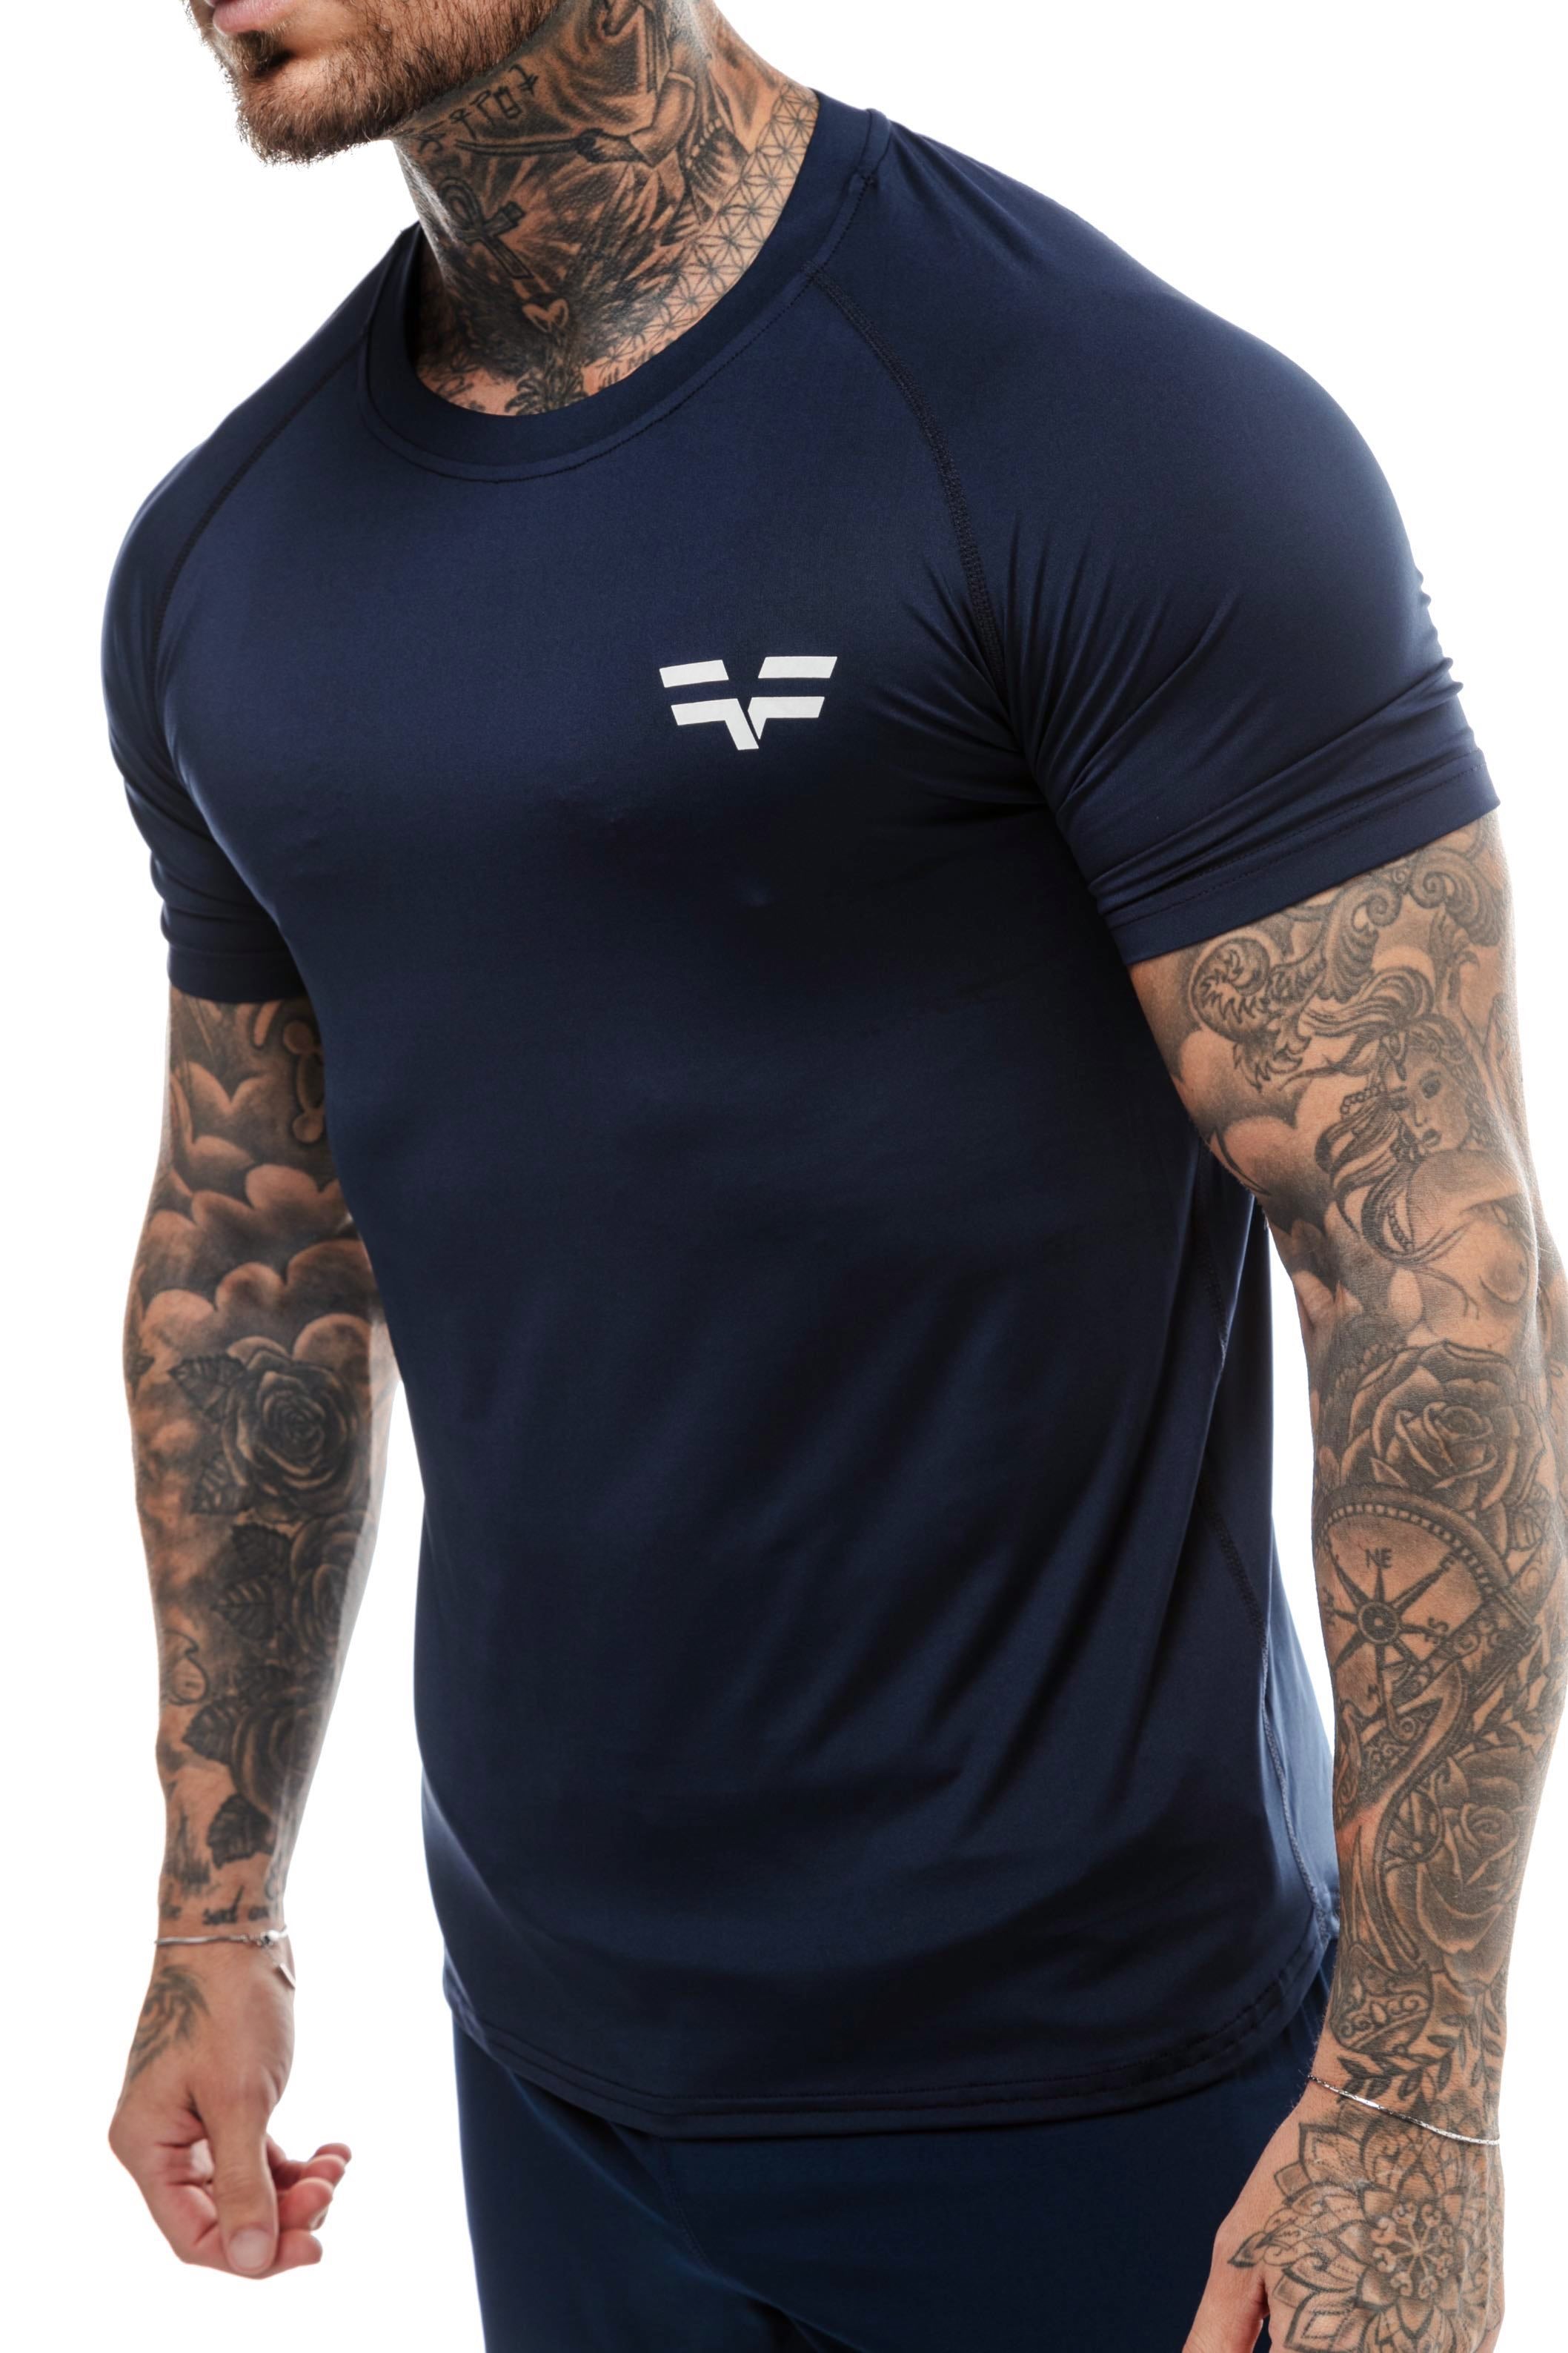 GymFreak Mens 365 T-Shirt - Navy Blue